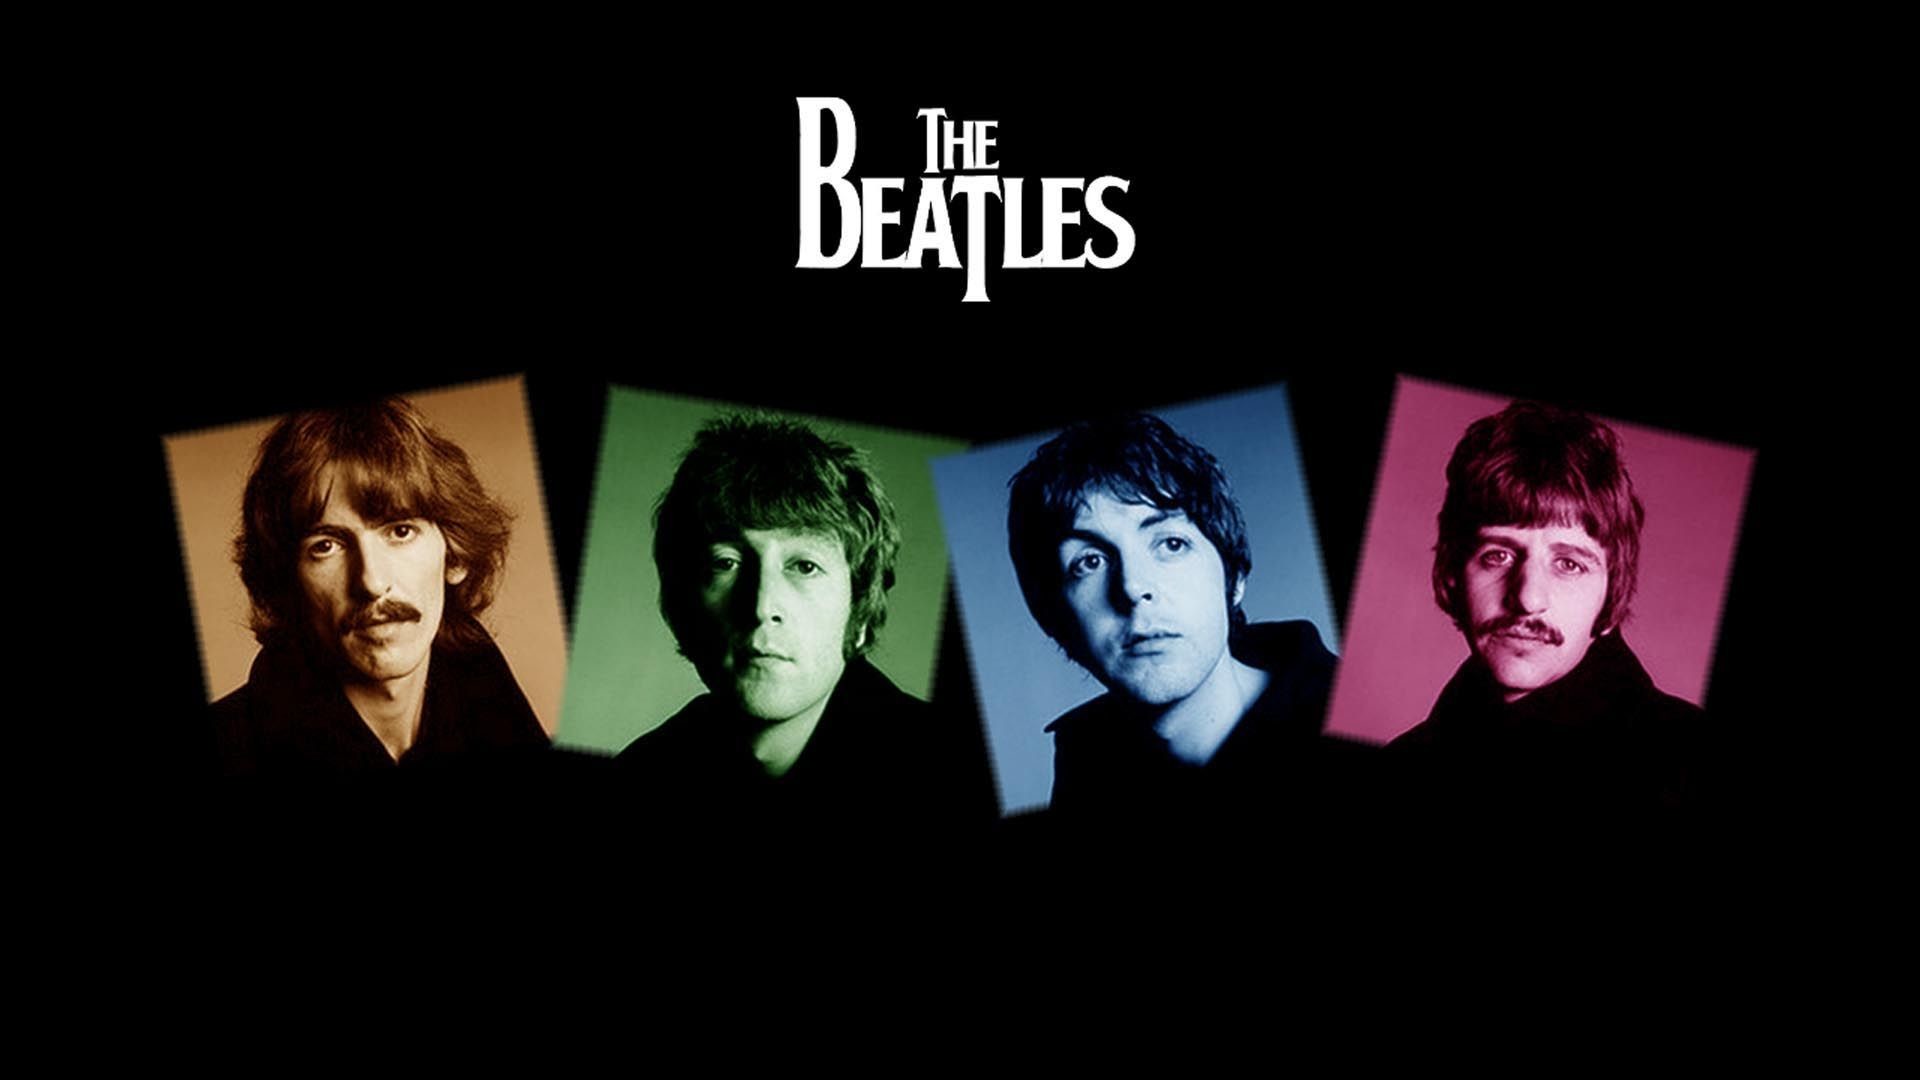 1920x1080, The Beatles Wallpaper 1920ã1080 Beatles - Beatles Wallpaper Hd - HD Wallpaper 